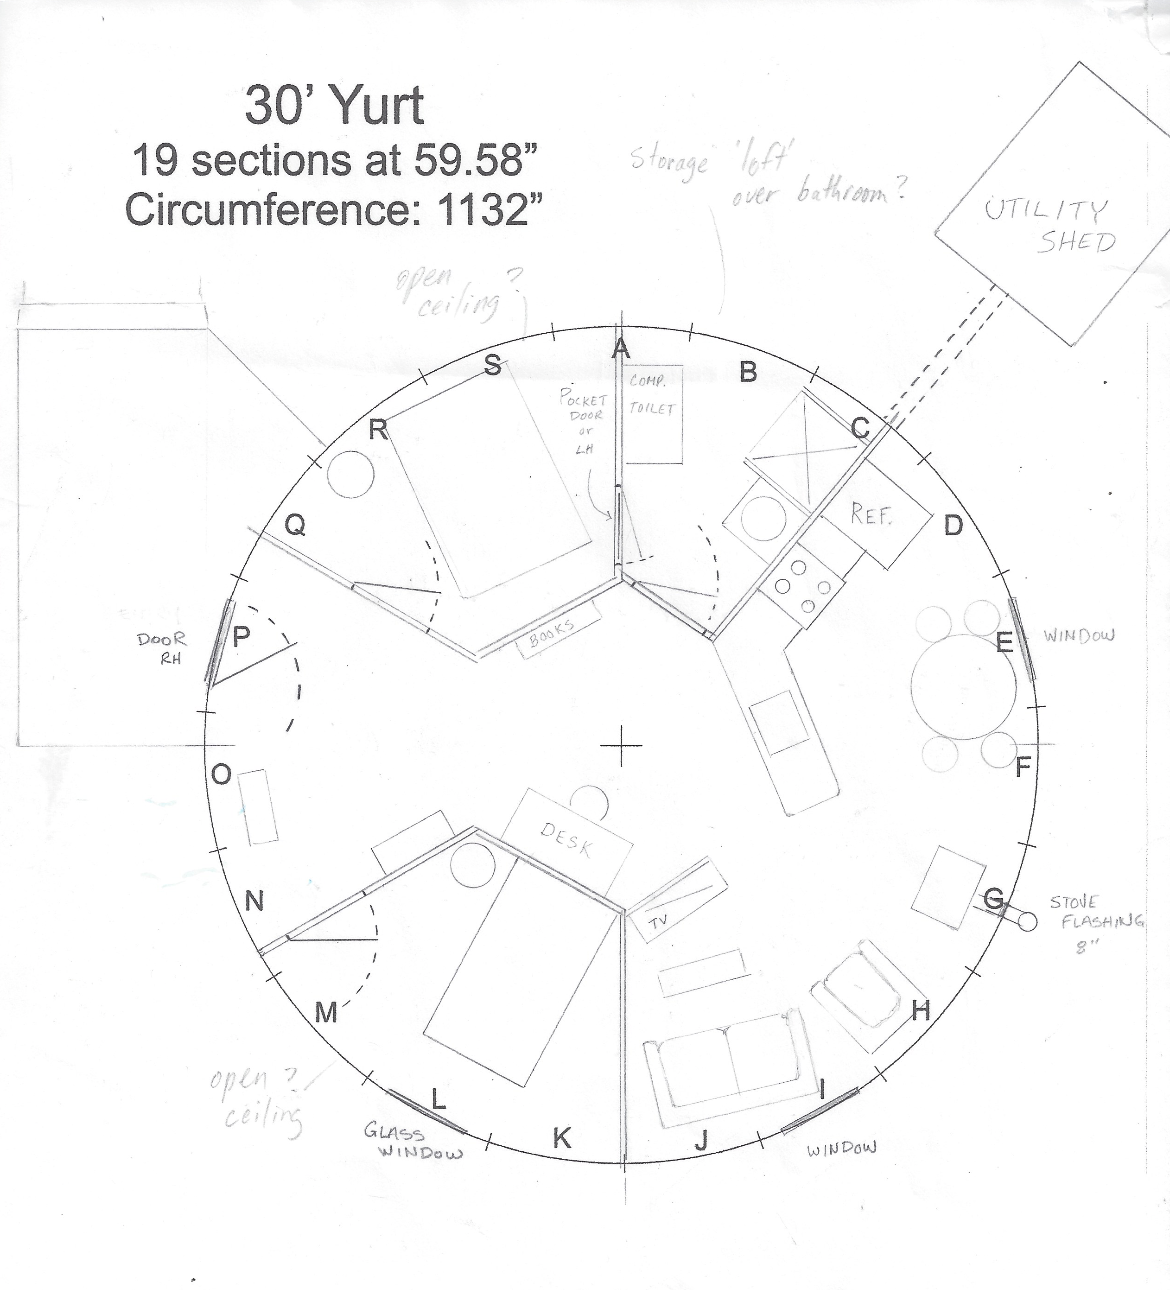 30' yurt floor plan